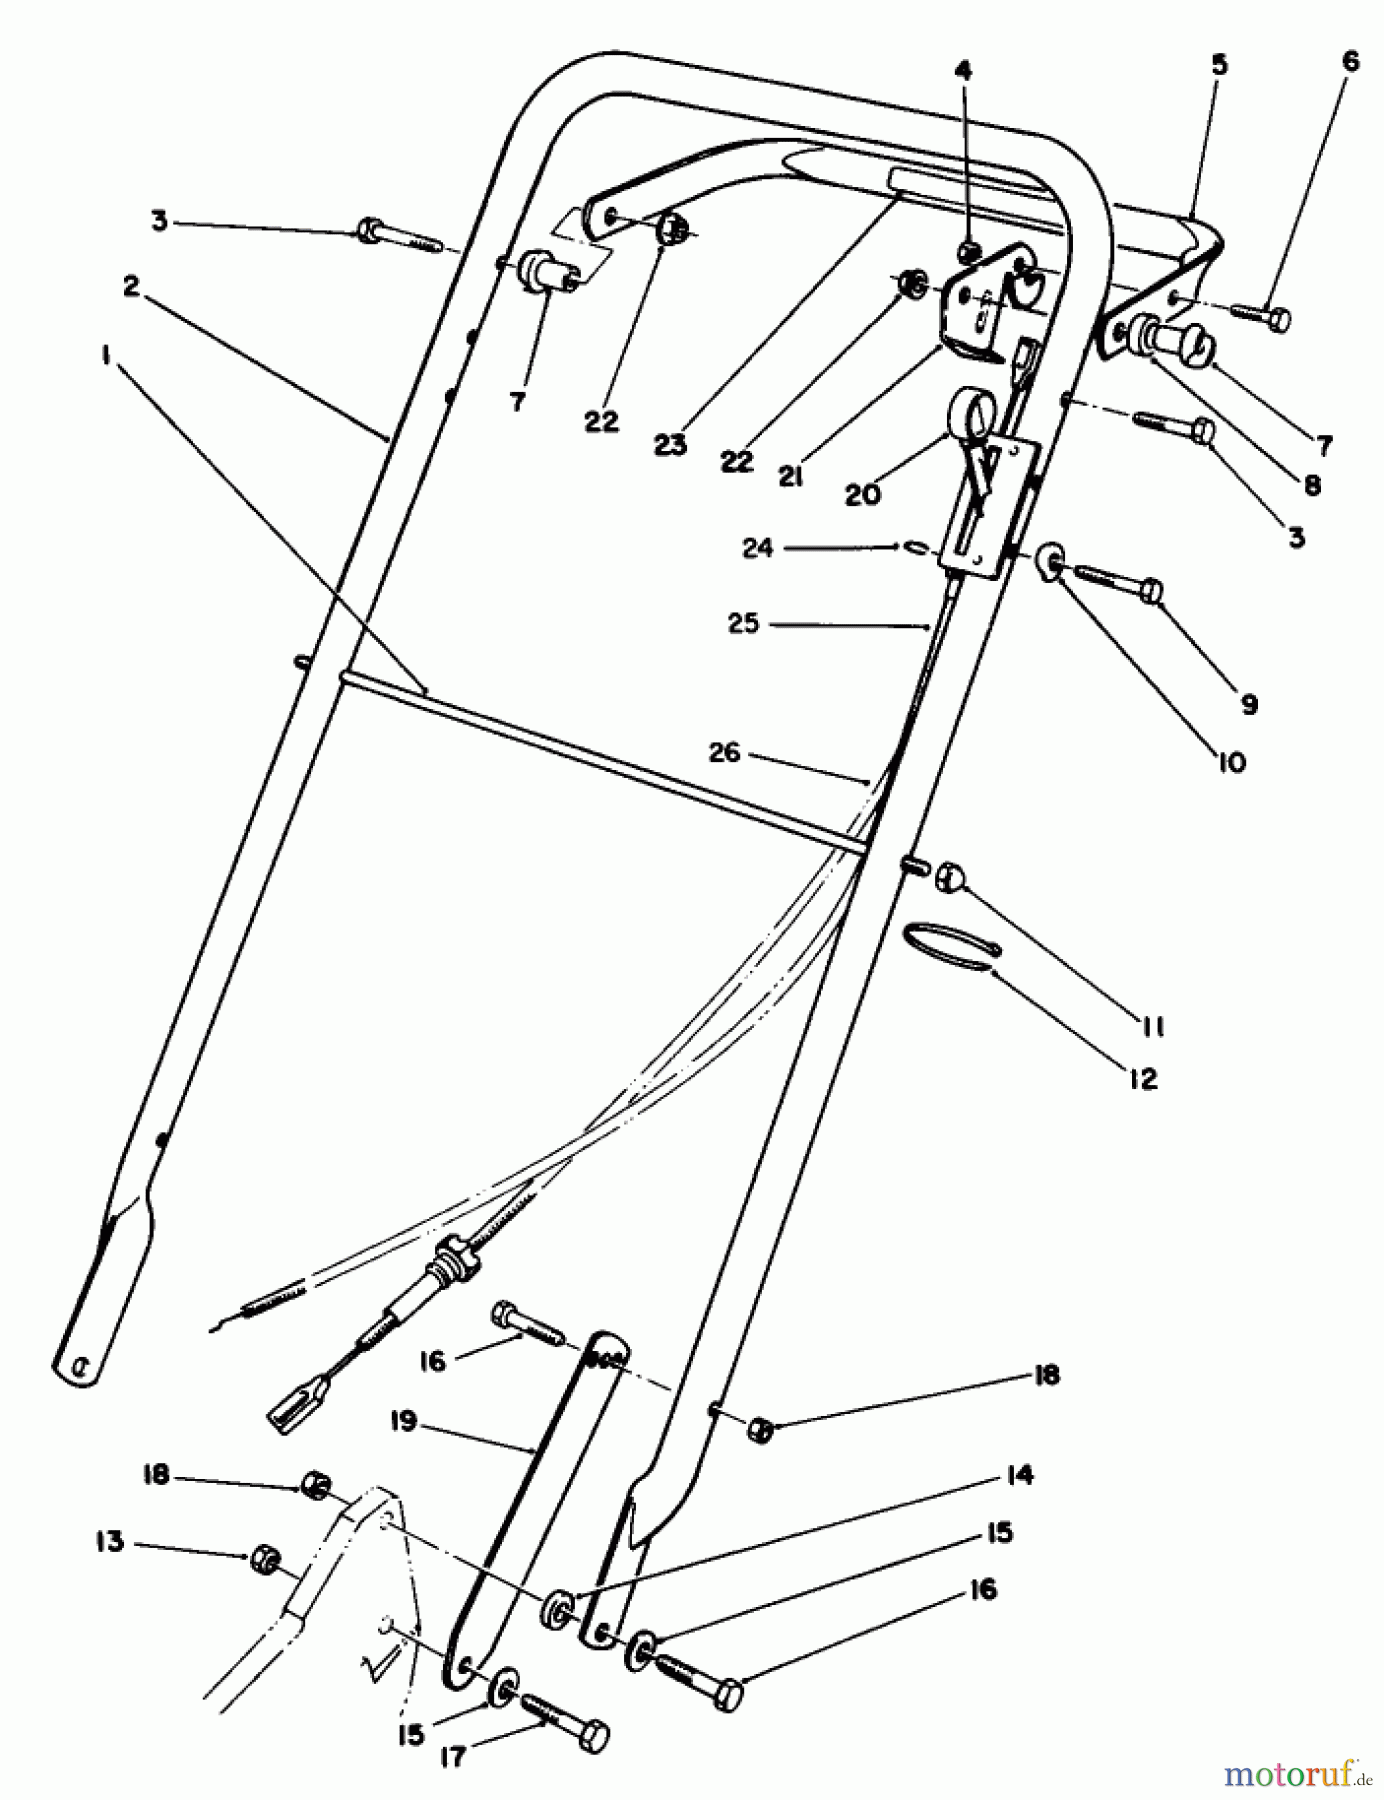  Toro Neu Mowers, Walk-Behind Seite 2 22035 - Toro Lawnmower, 1990 (0000001-0999999) HANDLE ASSEMBLY (MODEL 22035)